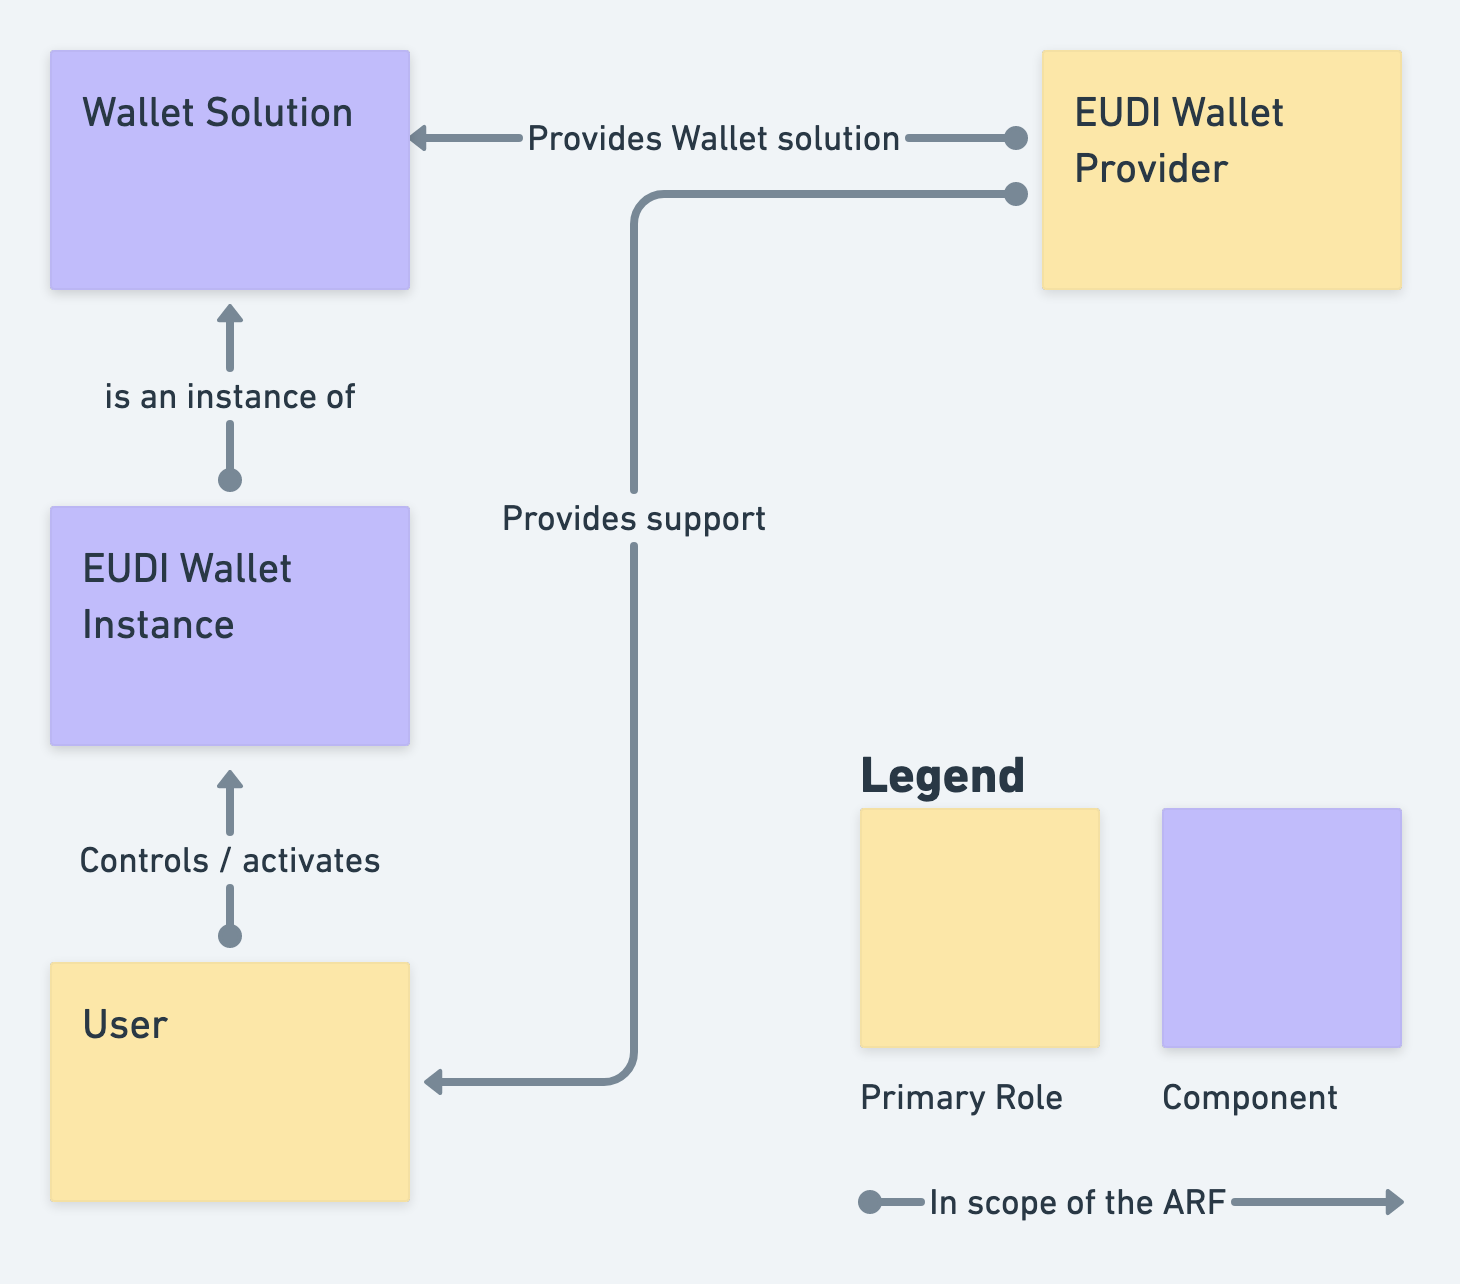 Figure 2: Simplified EUDI Wallet Object Model